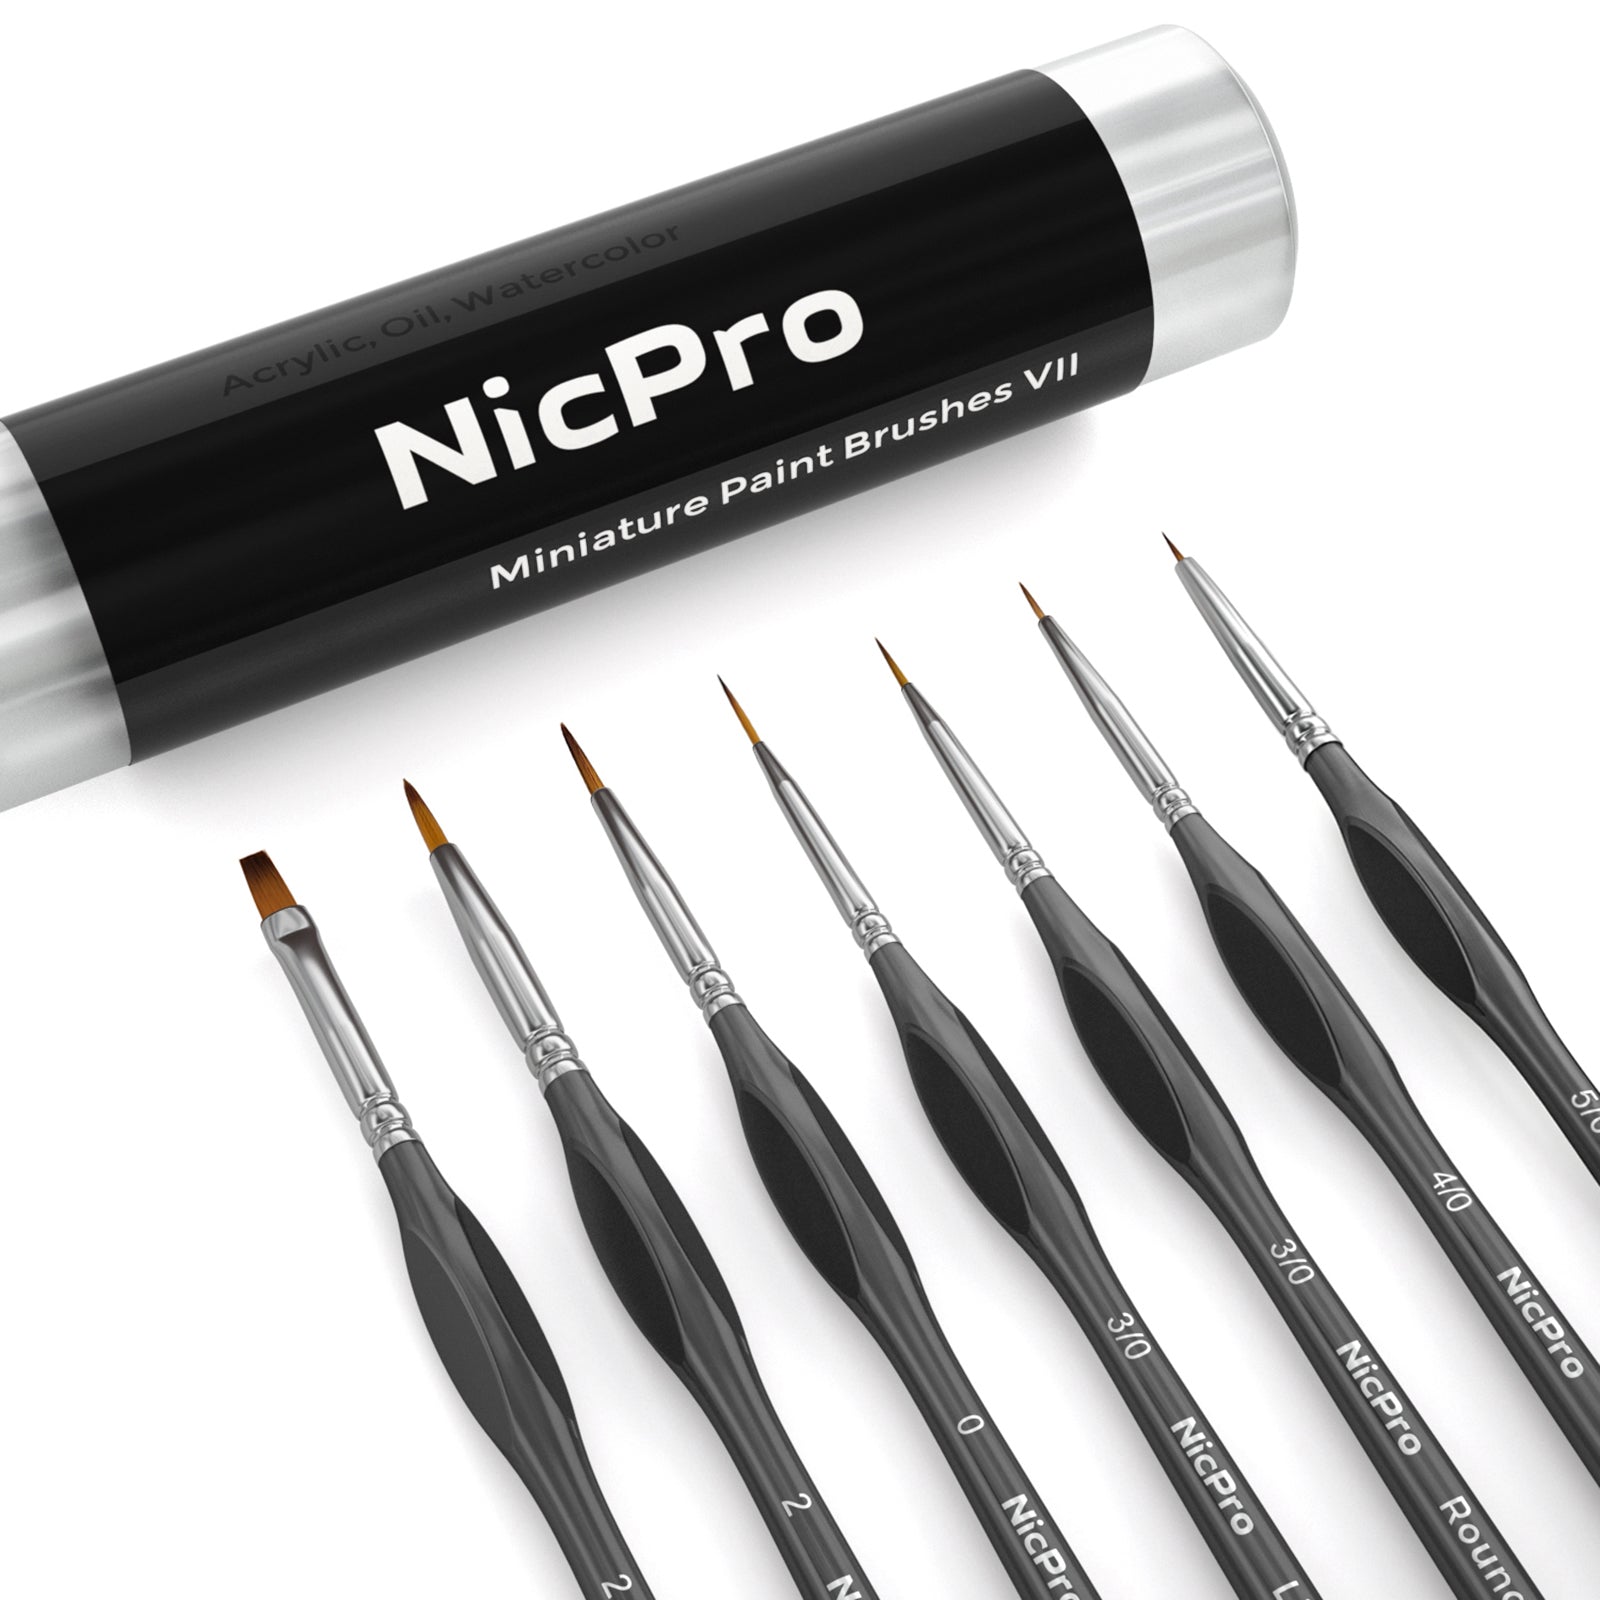 Nicpro Fan Paint Brushes 10 PCS Artist Painting Brush Set Soft Anti-Sh